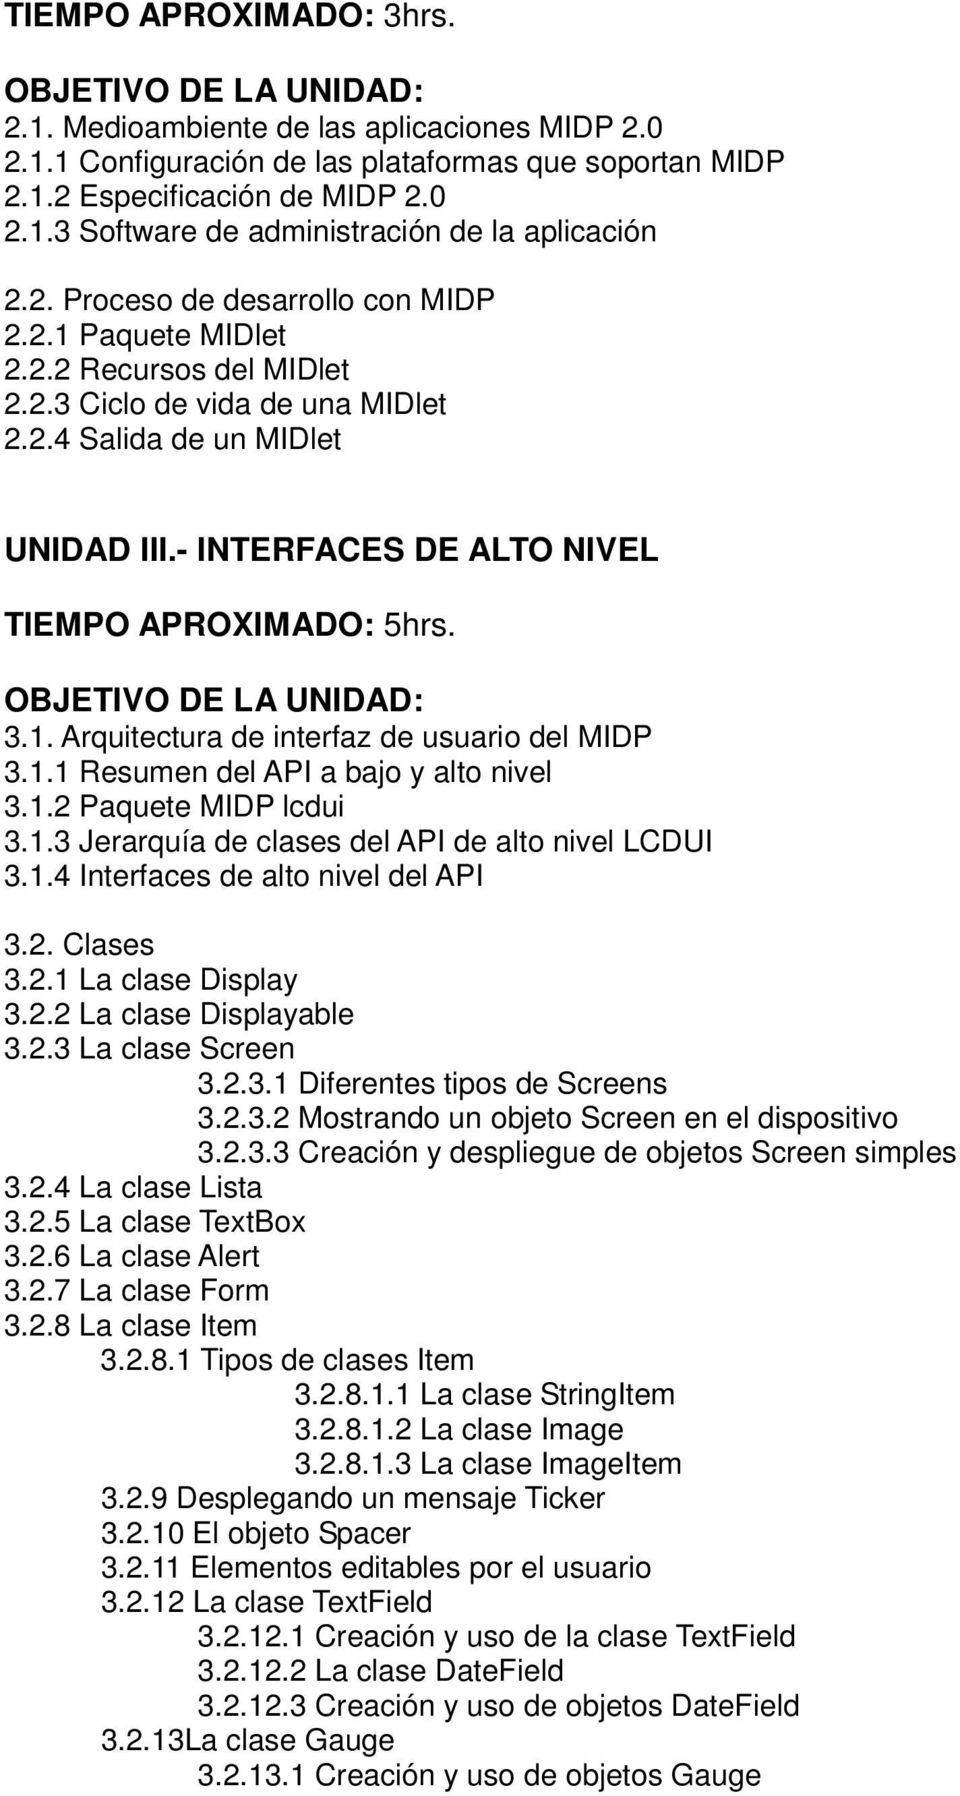 - INTERFACES DE ALTO NIVEL TIEMPO APROXIMADO: 5hrs. 3.1. Arquitectura de interfaz de usuario del MIDP 3.1.1 Resumen del API a bajo y alto nivel 3.1.2 Paquete MIDP lcdui 3.1.3 Jerarquía de clases del API de alto nivel LCDUI 3.